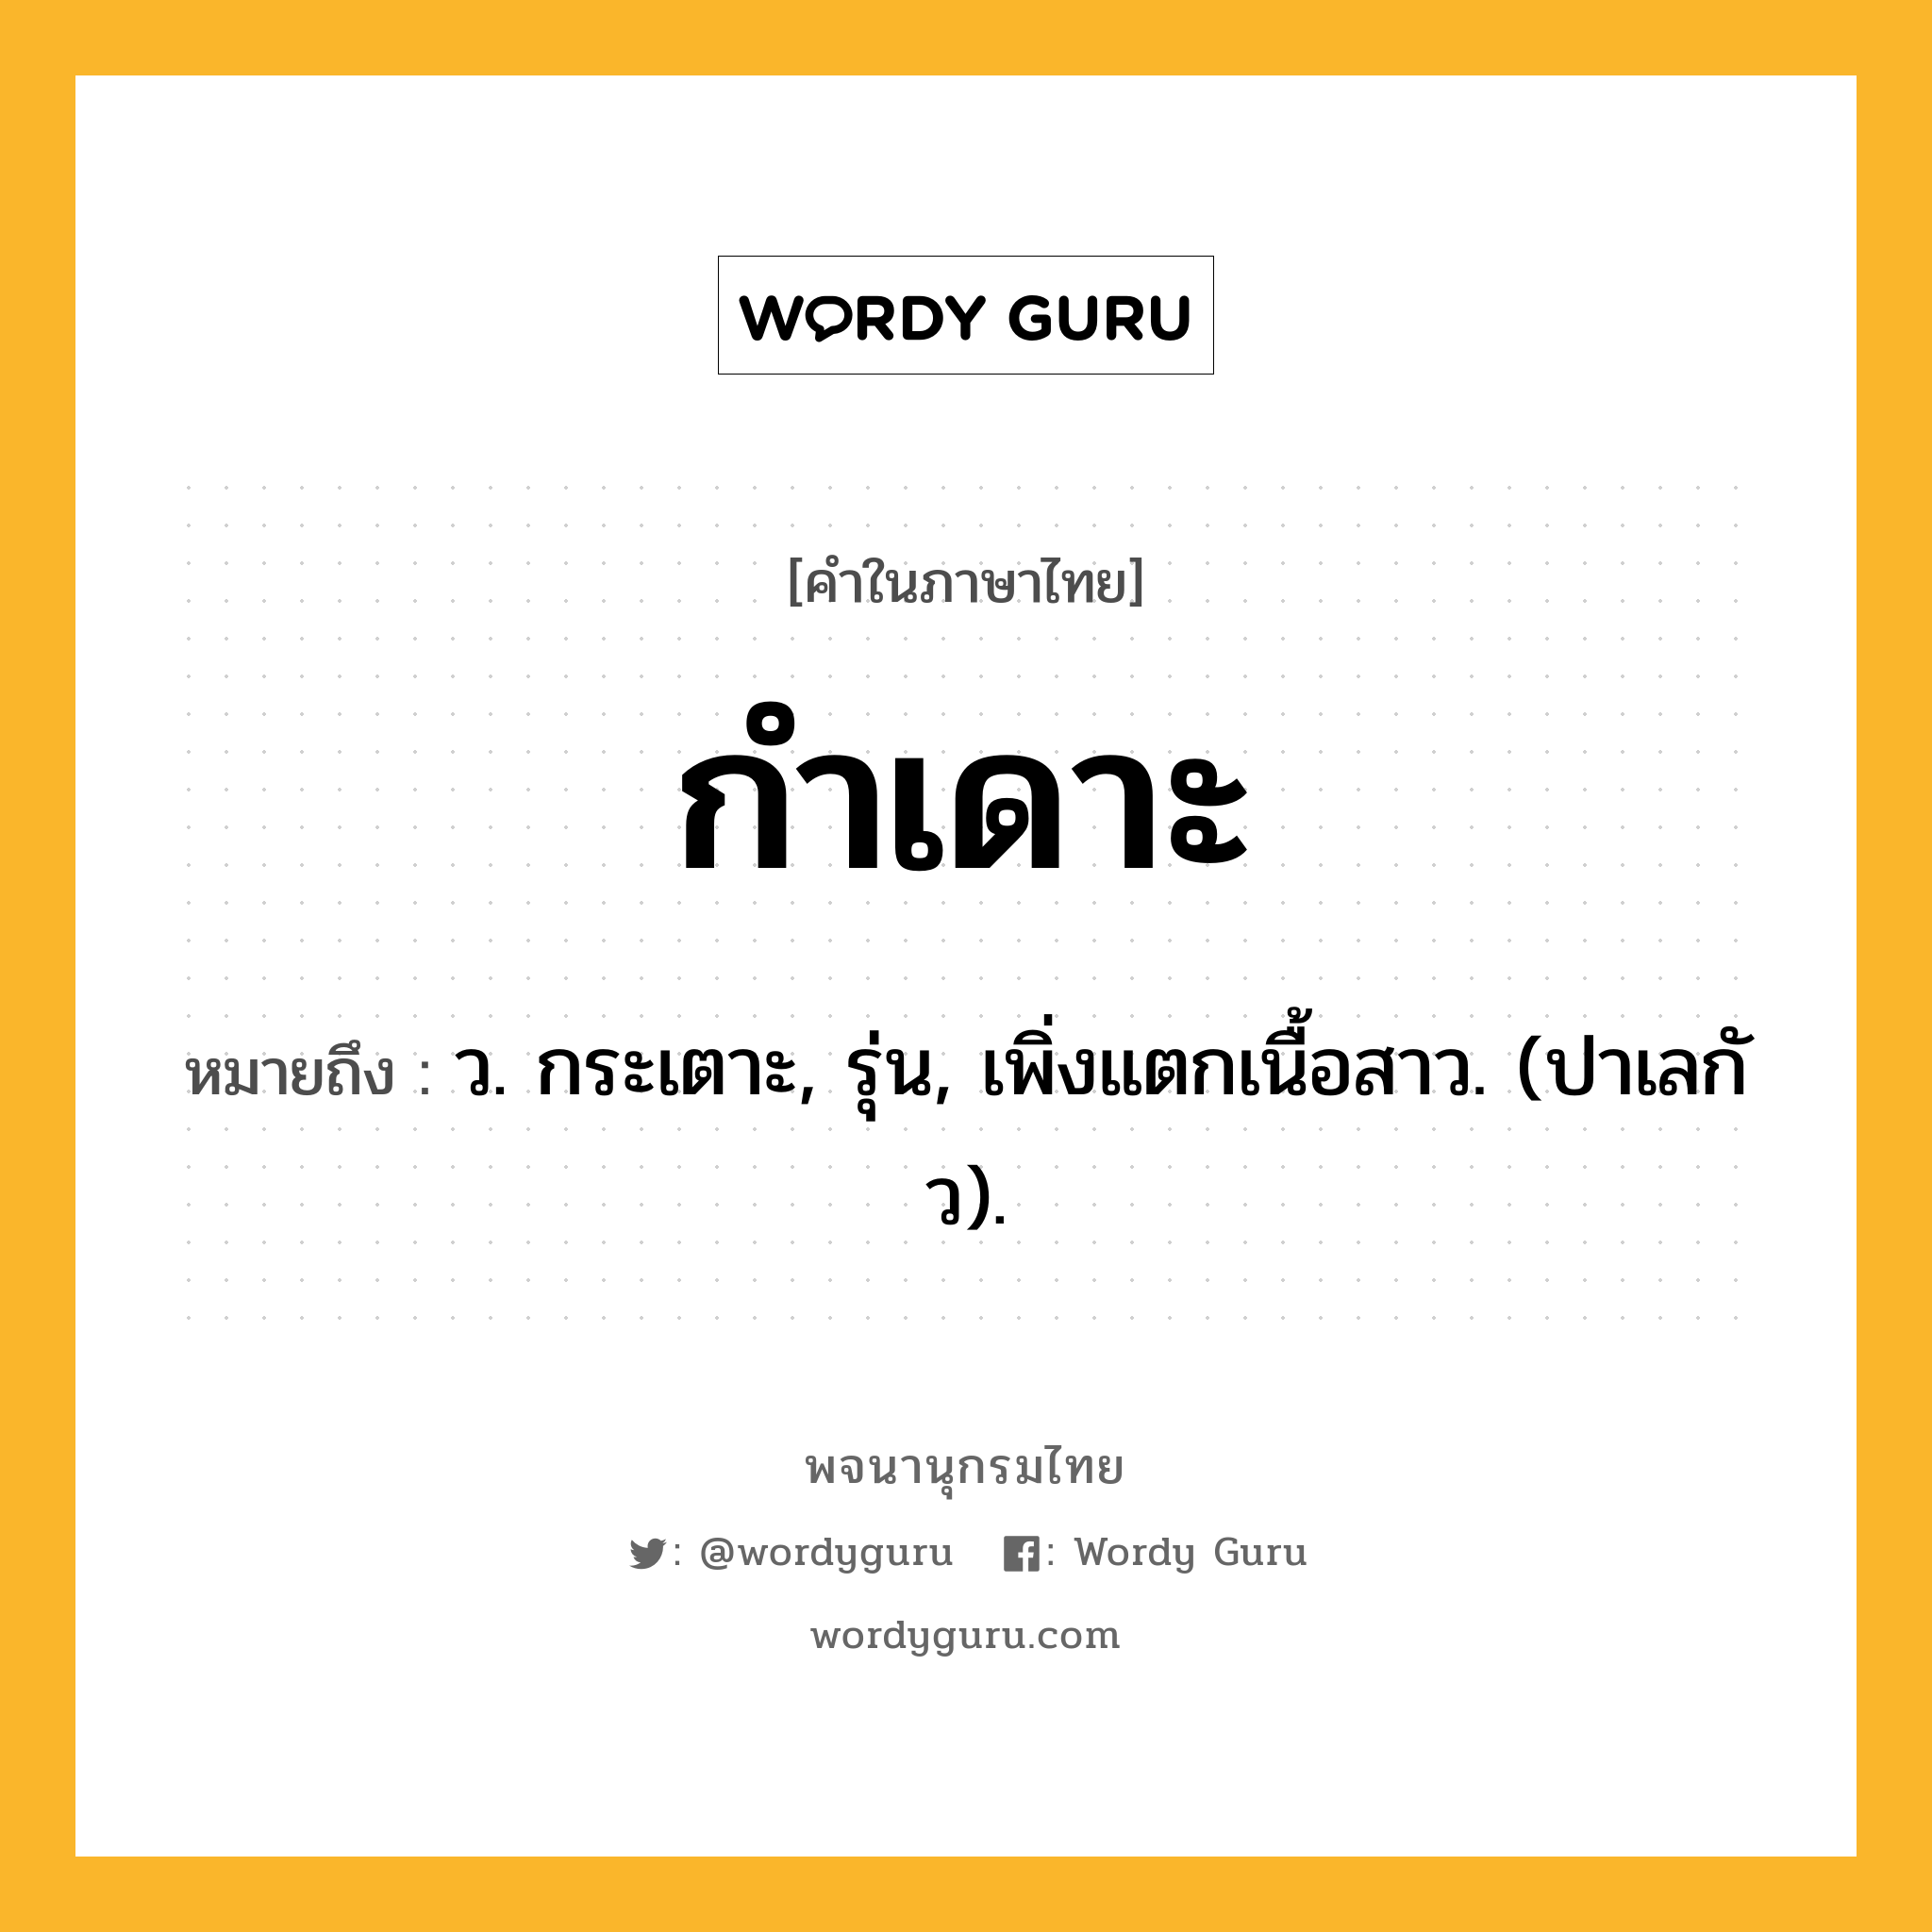 กำเดาะ ความหมาย หมายถึงอะไร?, คำในภาษาไทย กำเดาะ หมายถึง ว. กระเตาะ, รุ่น, เพิ่งแตกเนื้อสาว. (ปาเลกัว).